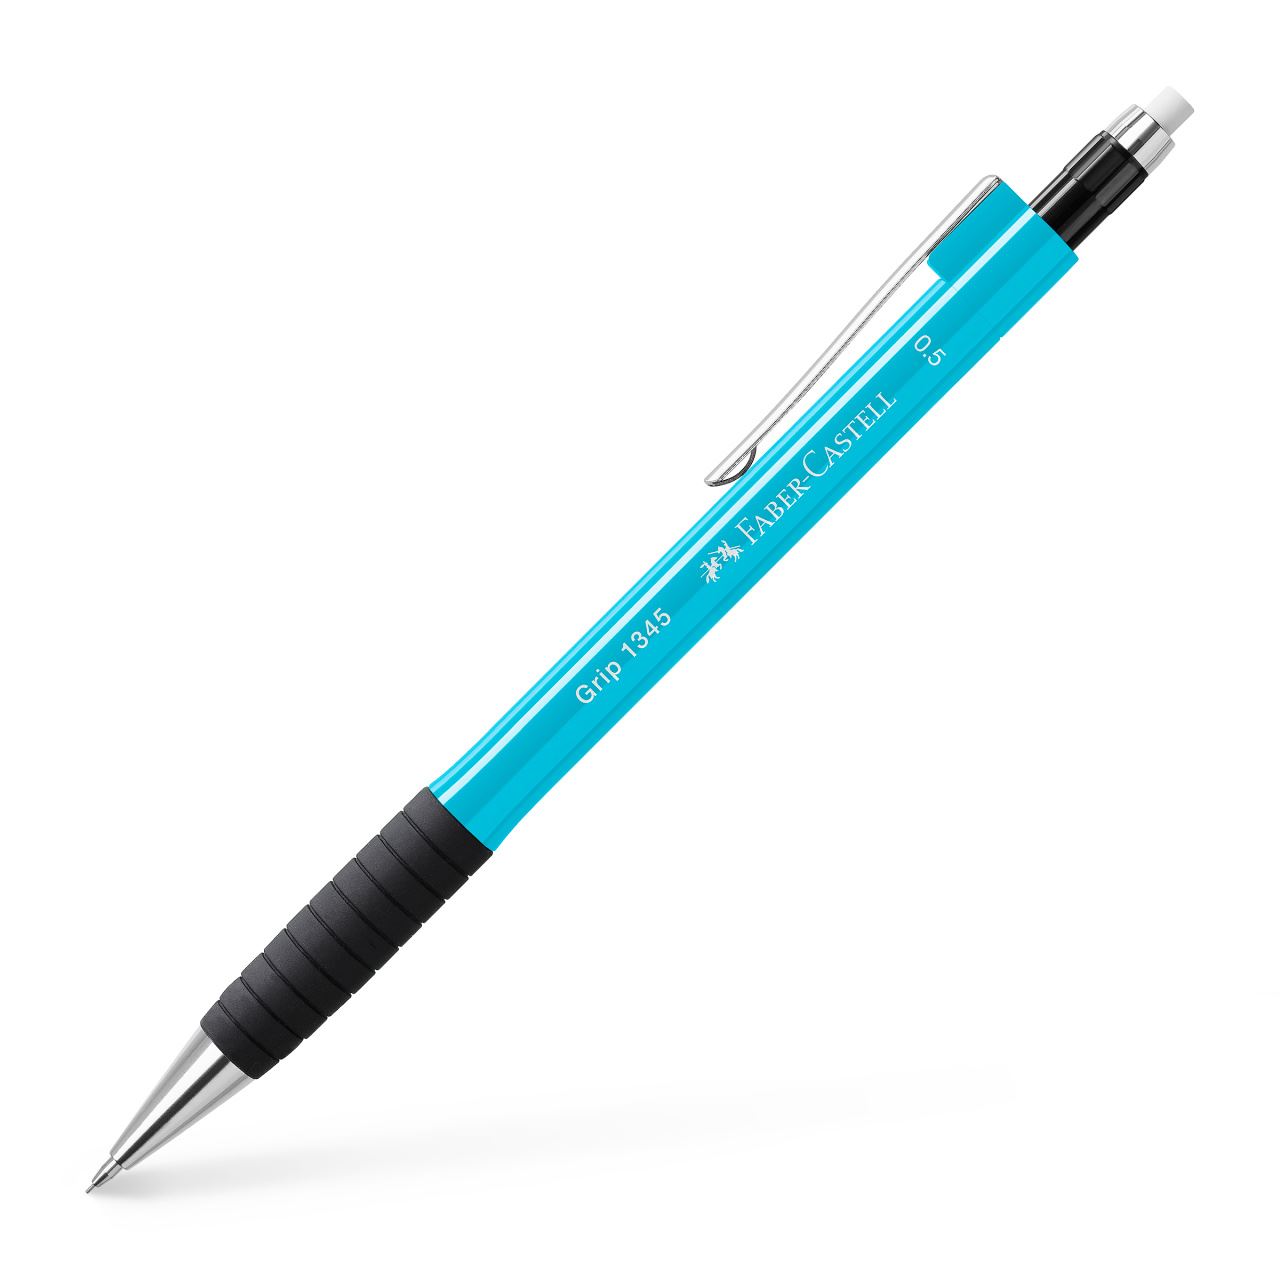 Faber-Castell - Mechanical pencil Grip 1345 0.5 mm light blue